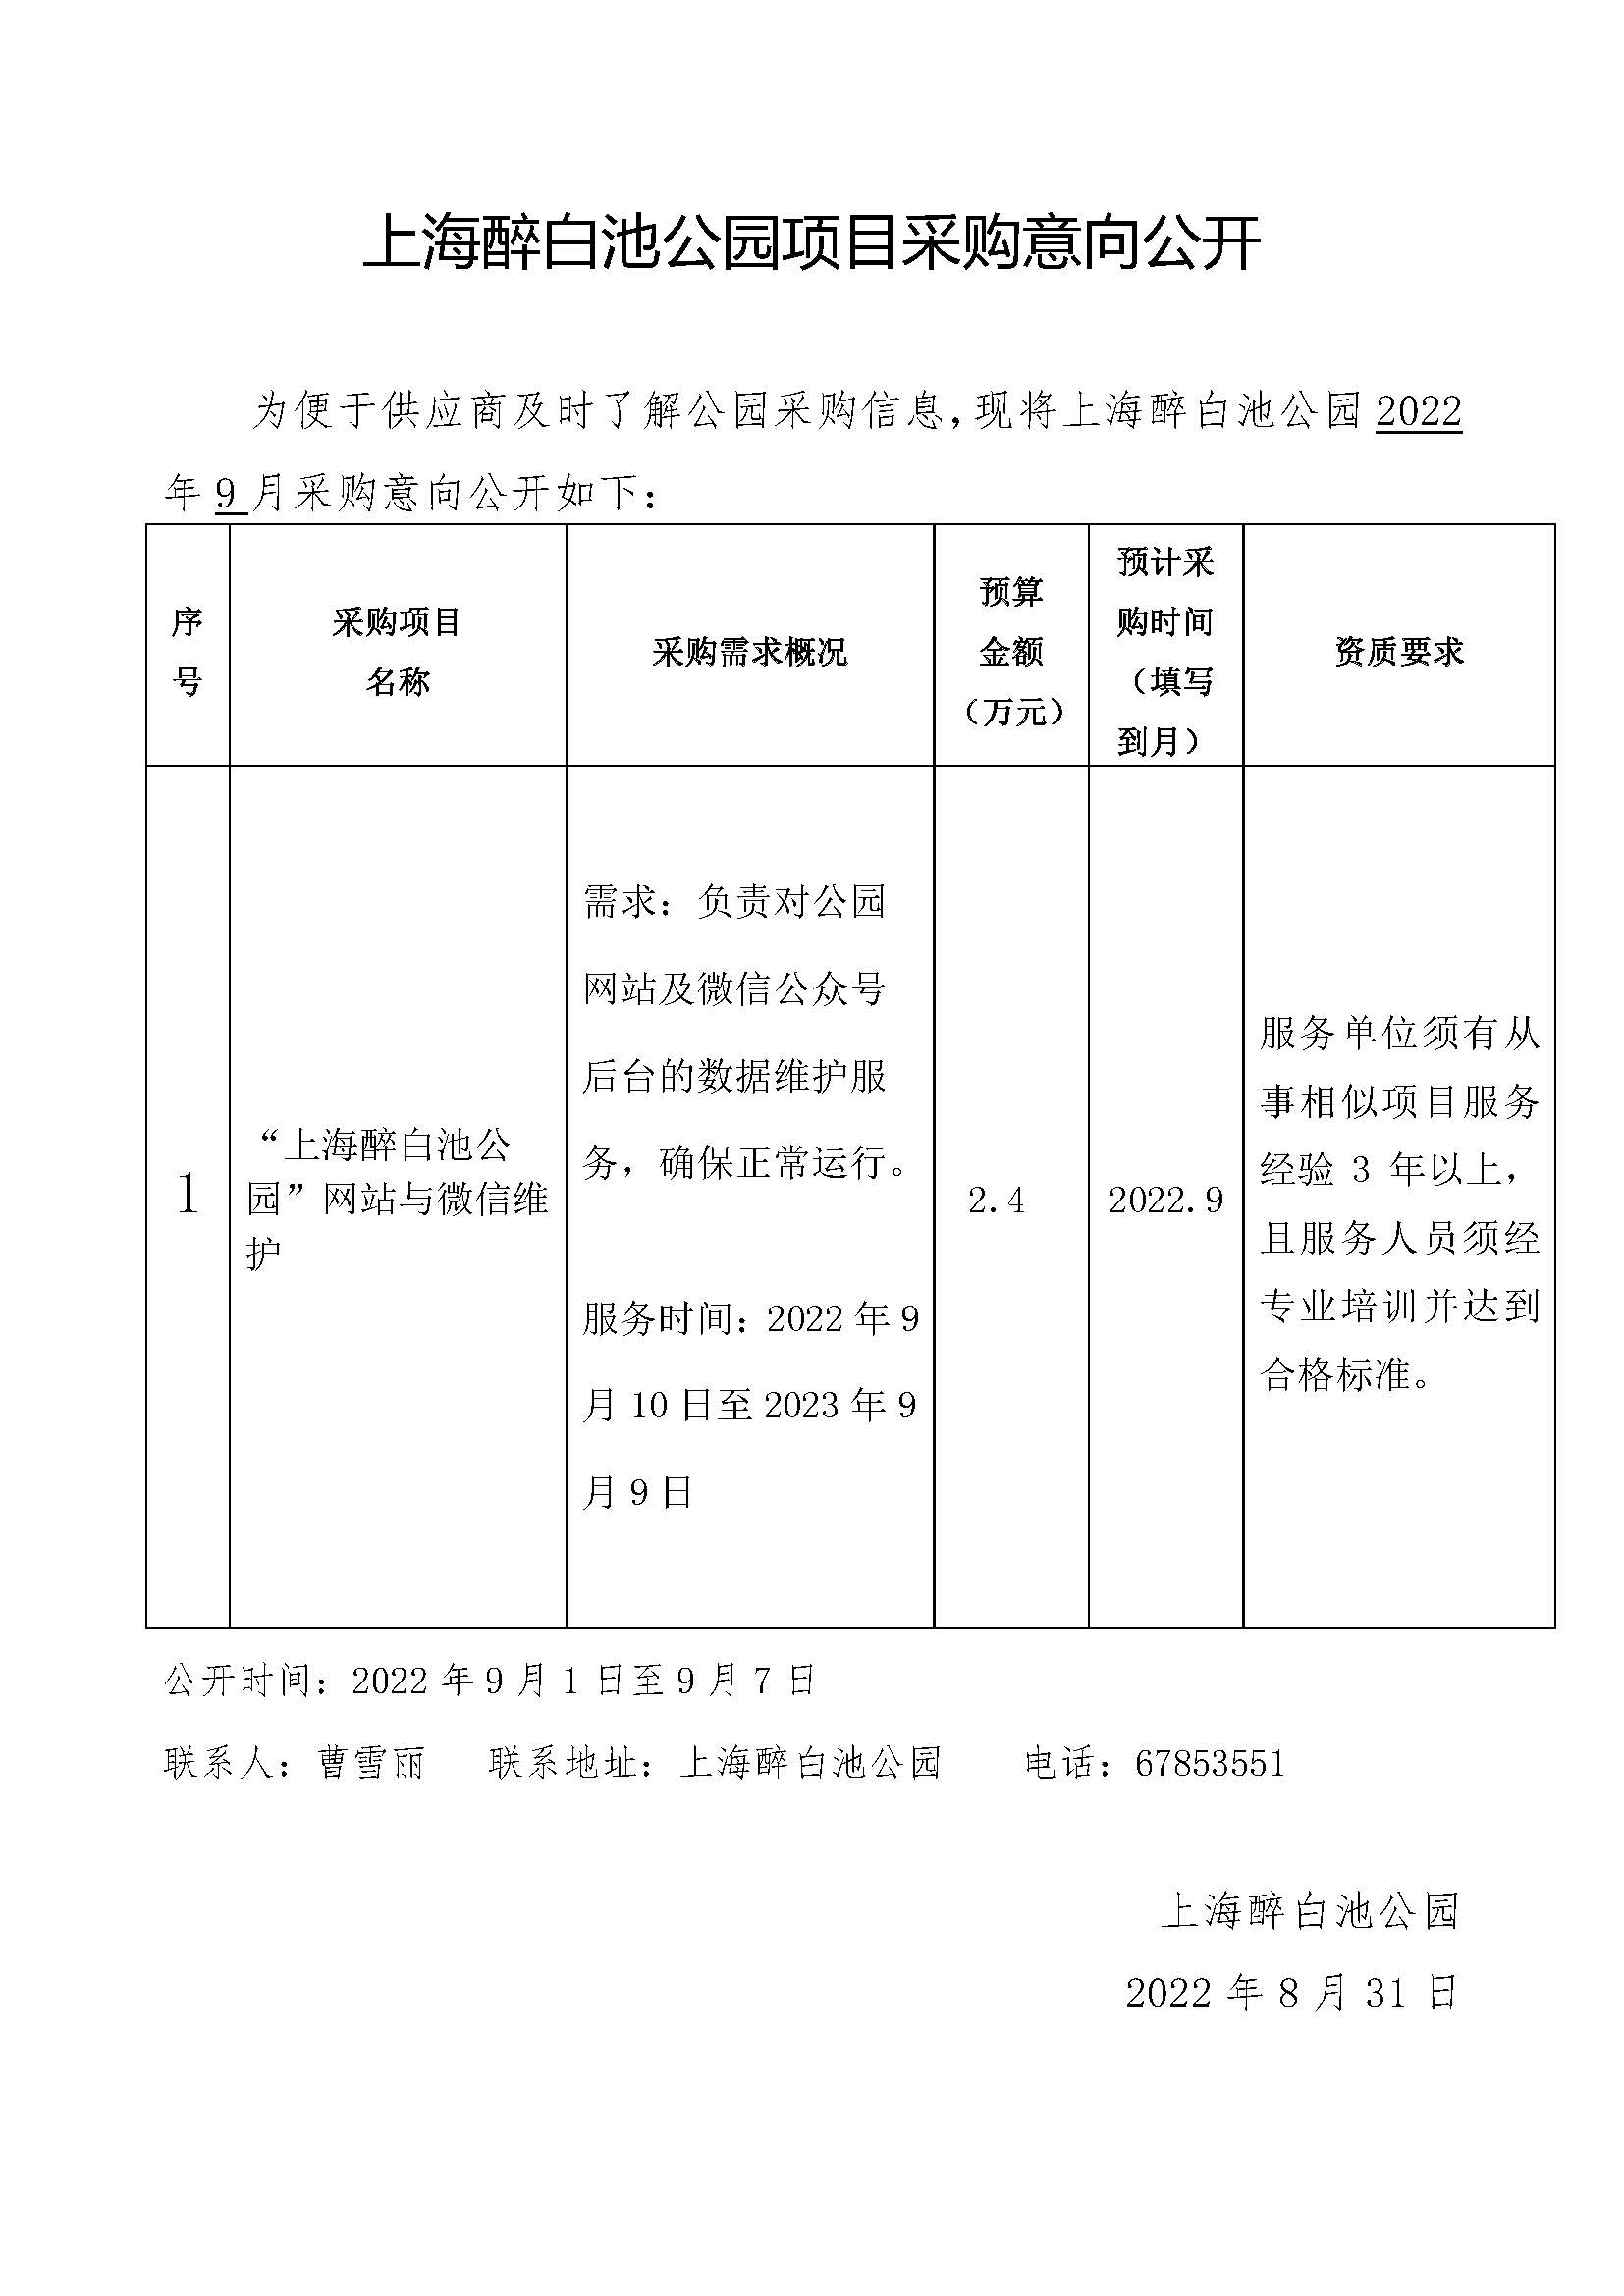 1_2022.8.31上海醉白池公园项目采购意向（网站和微信维护）.jpg